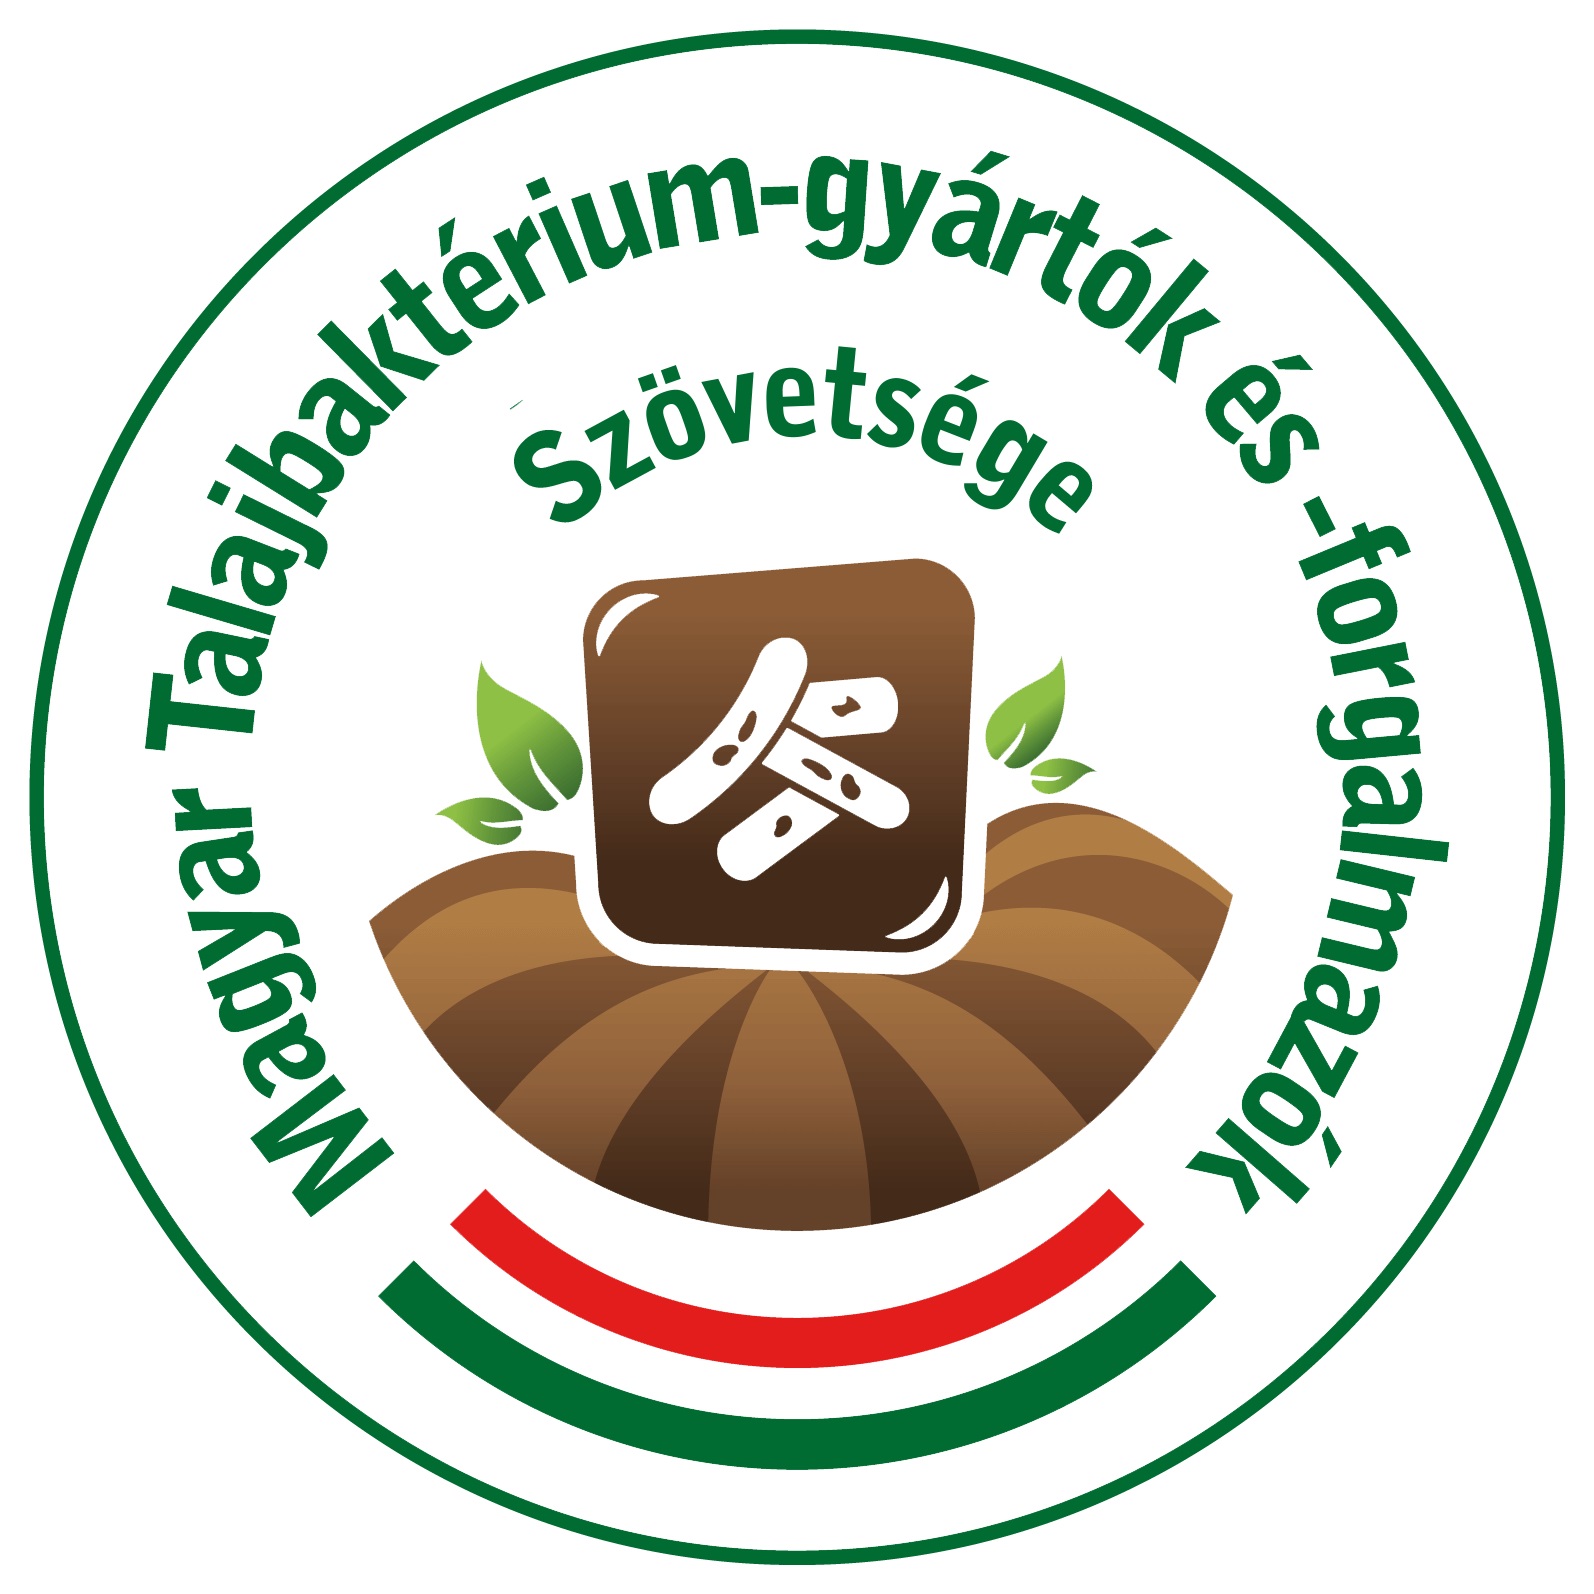 Talajbaktérium Szövetség Logo